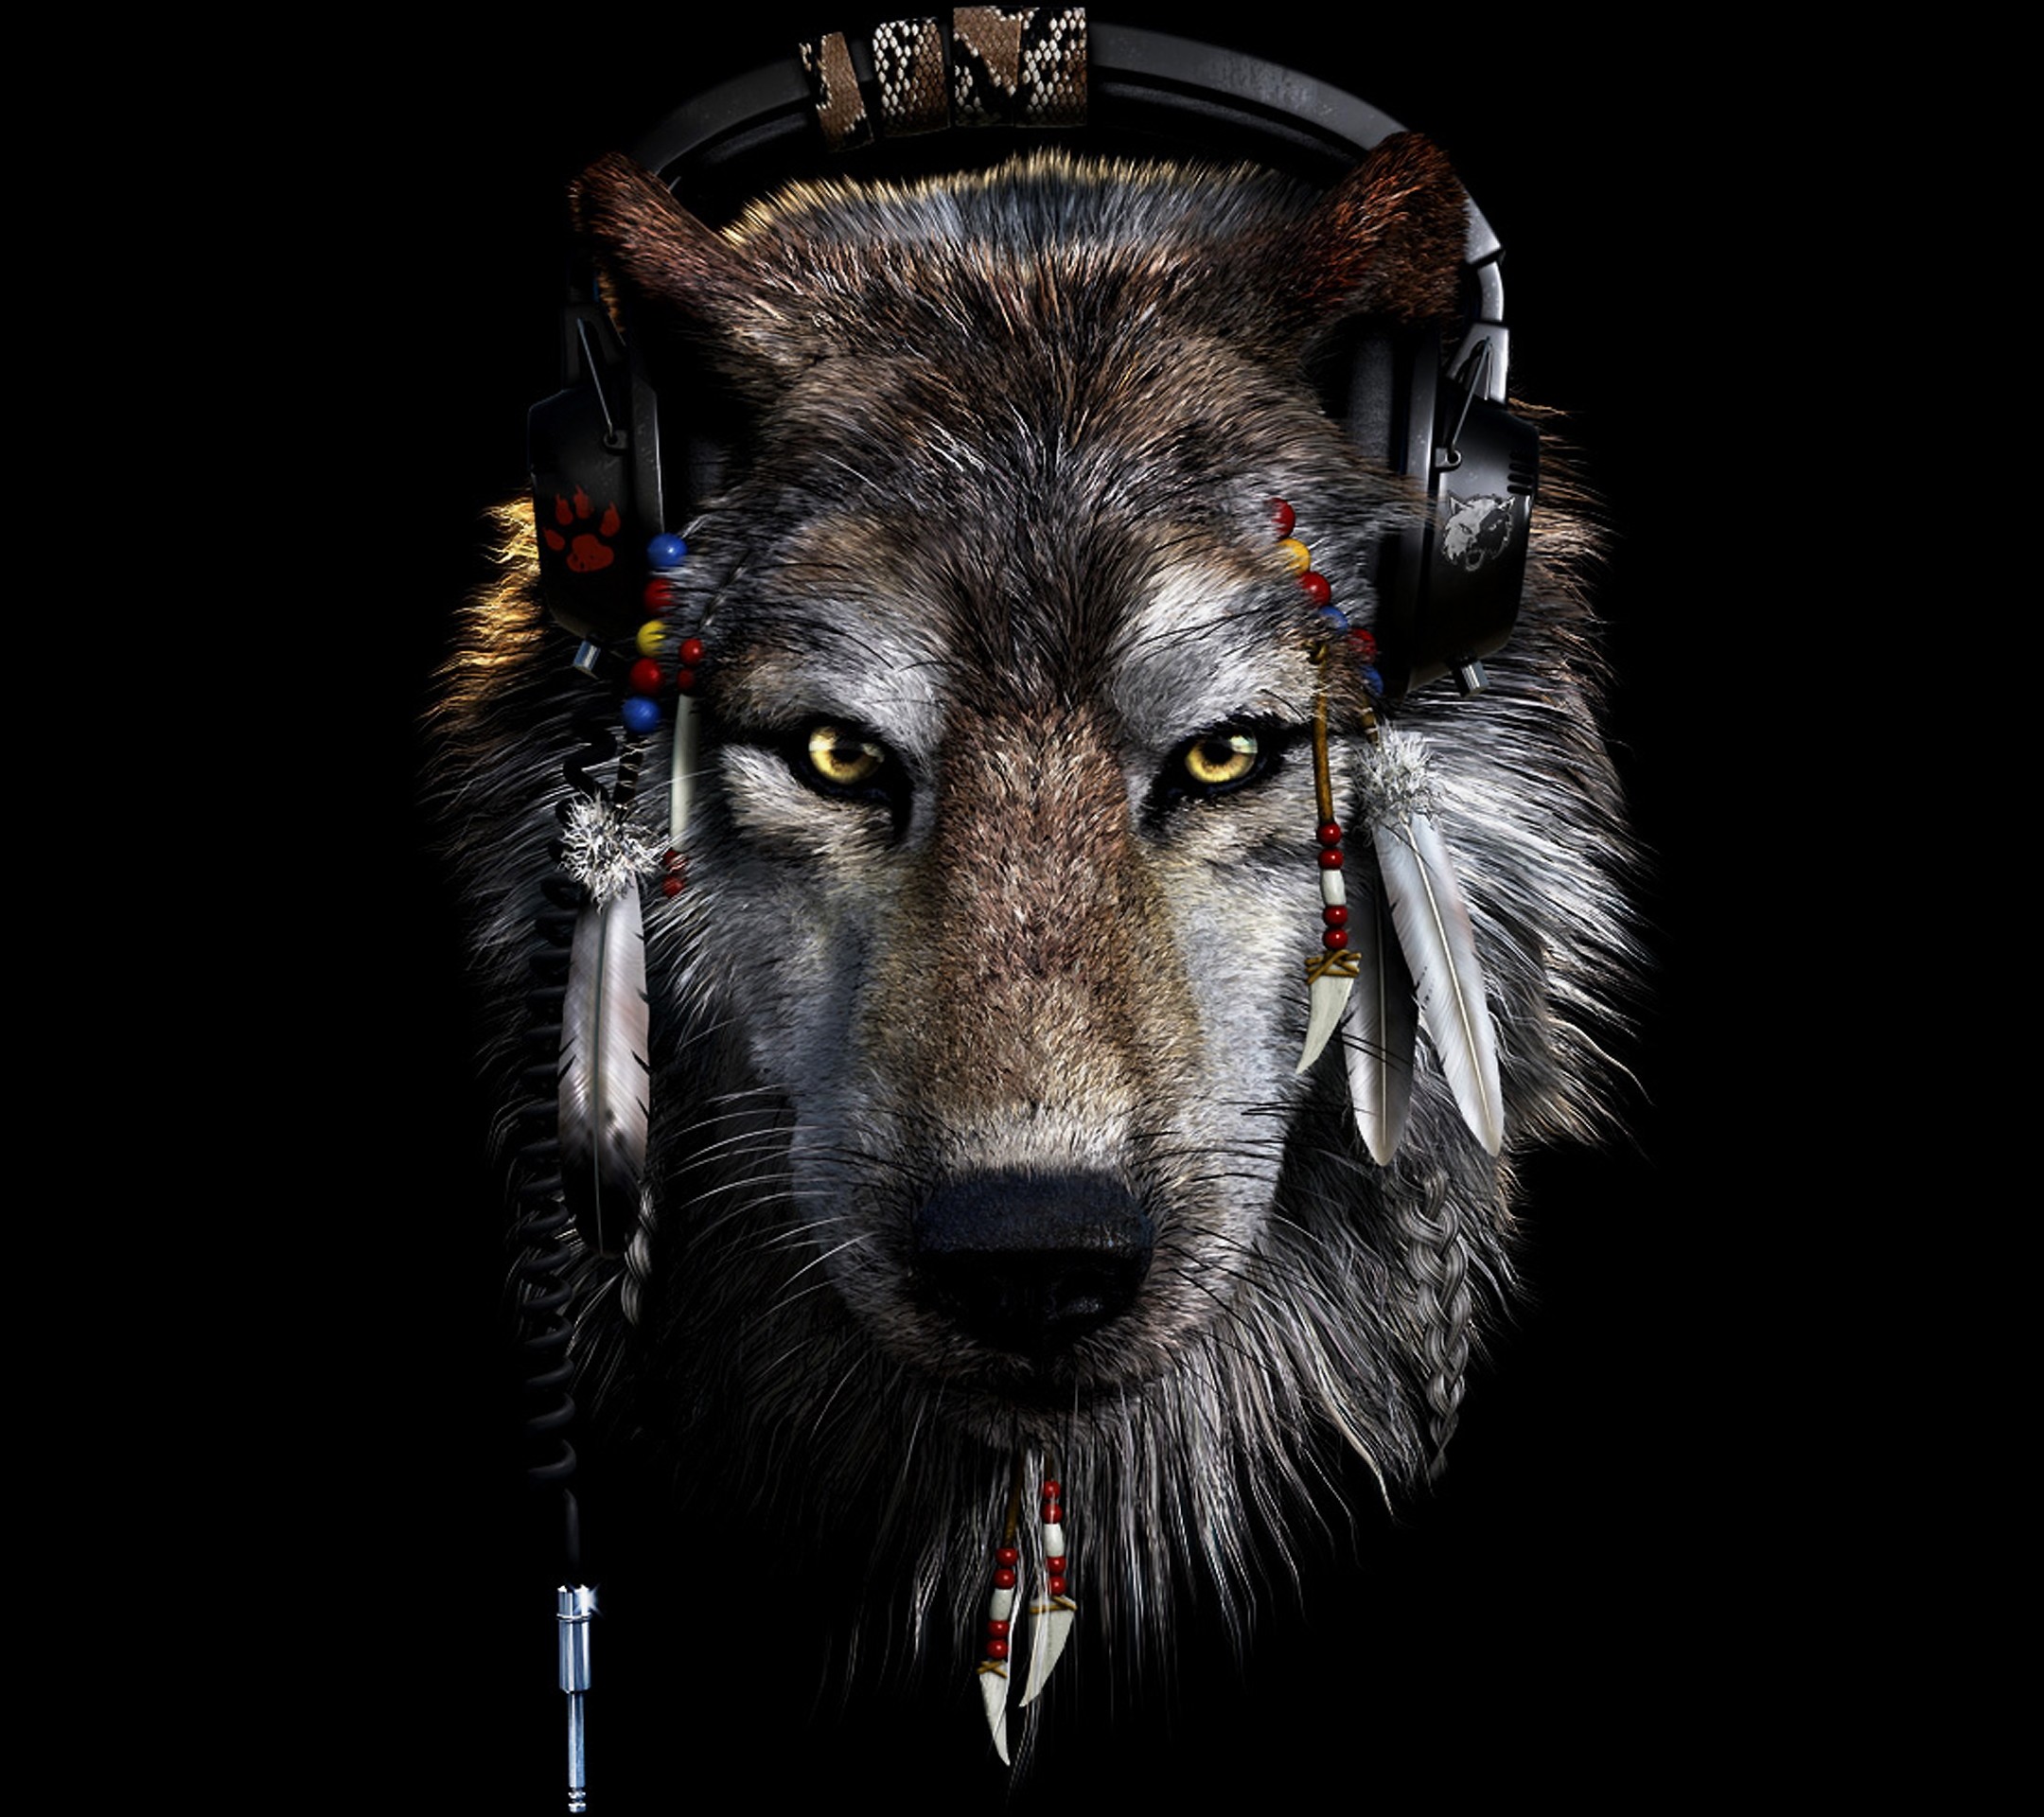 2160x1920 Wallpaper Indian wolf -| OutOfBit